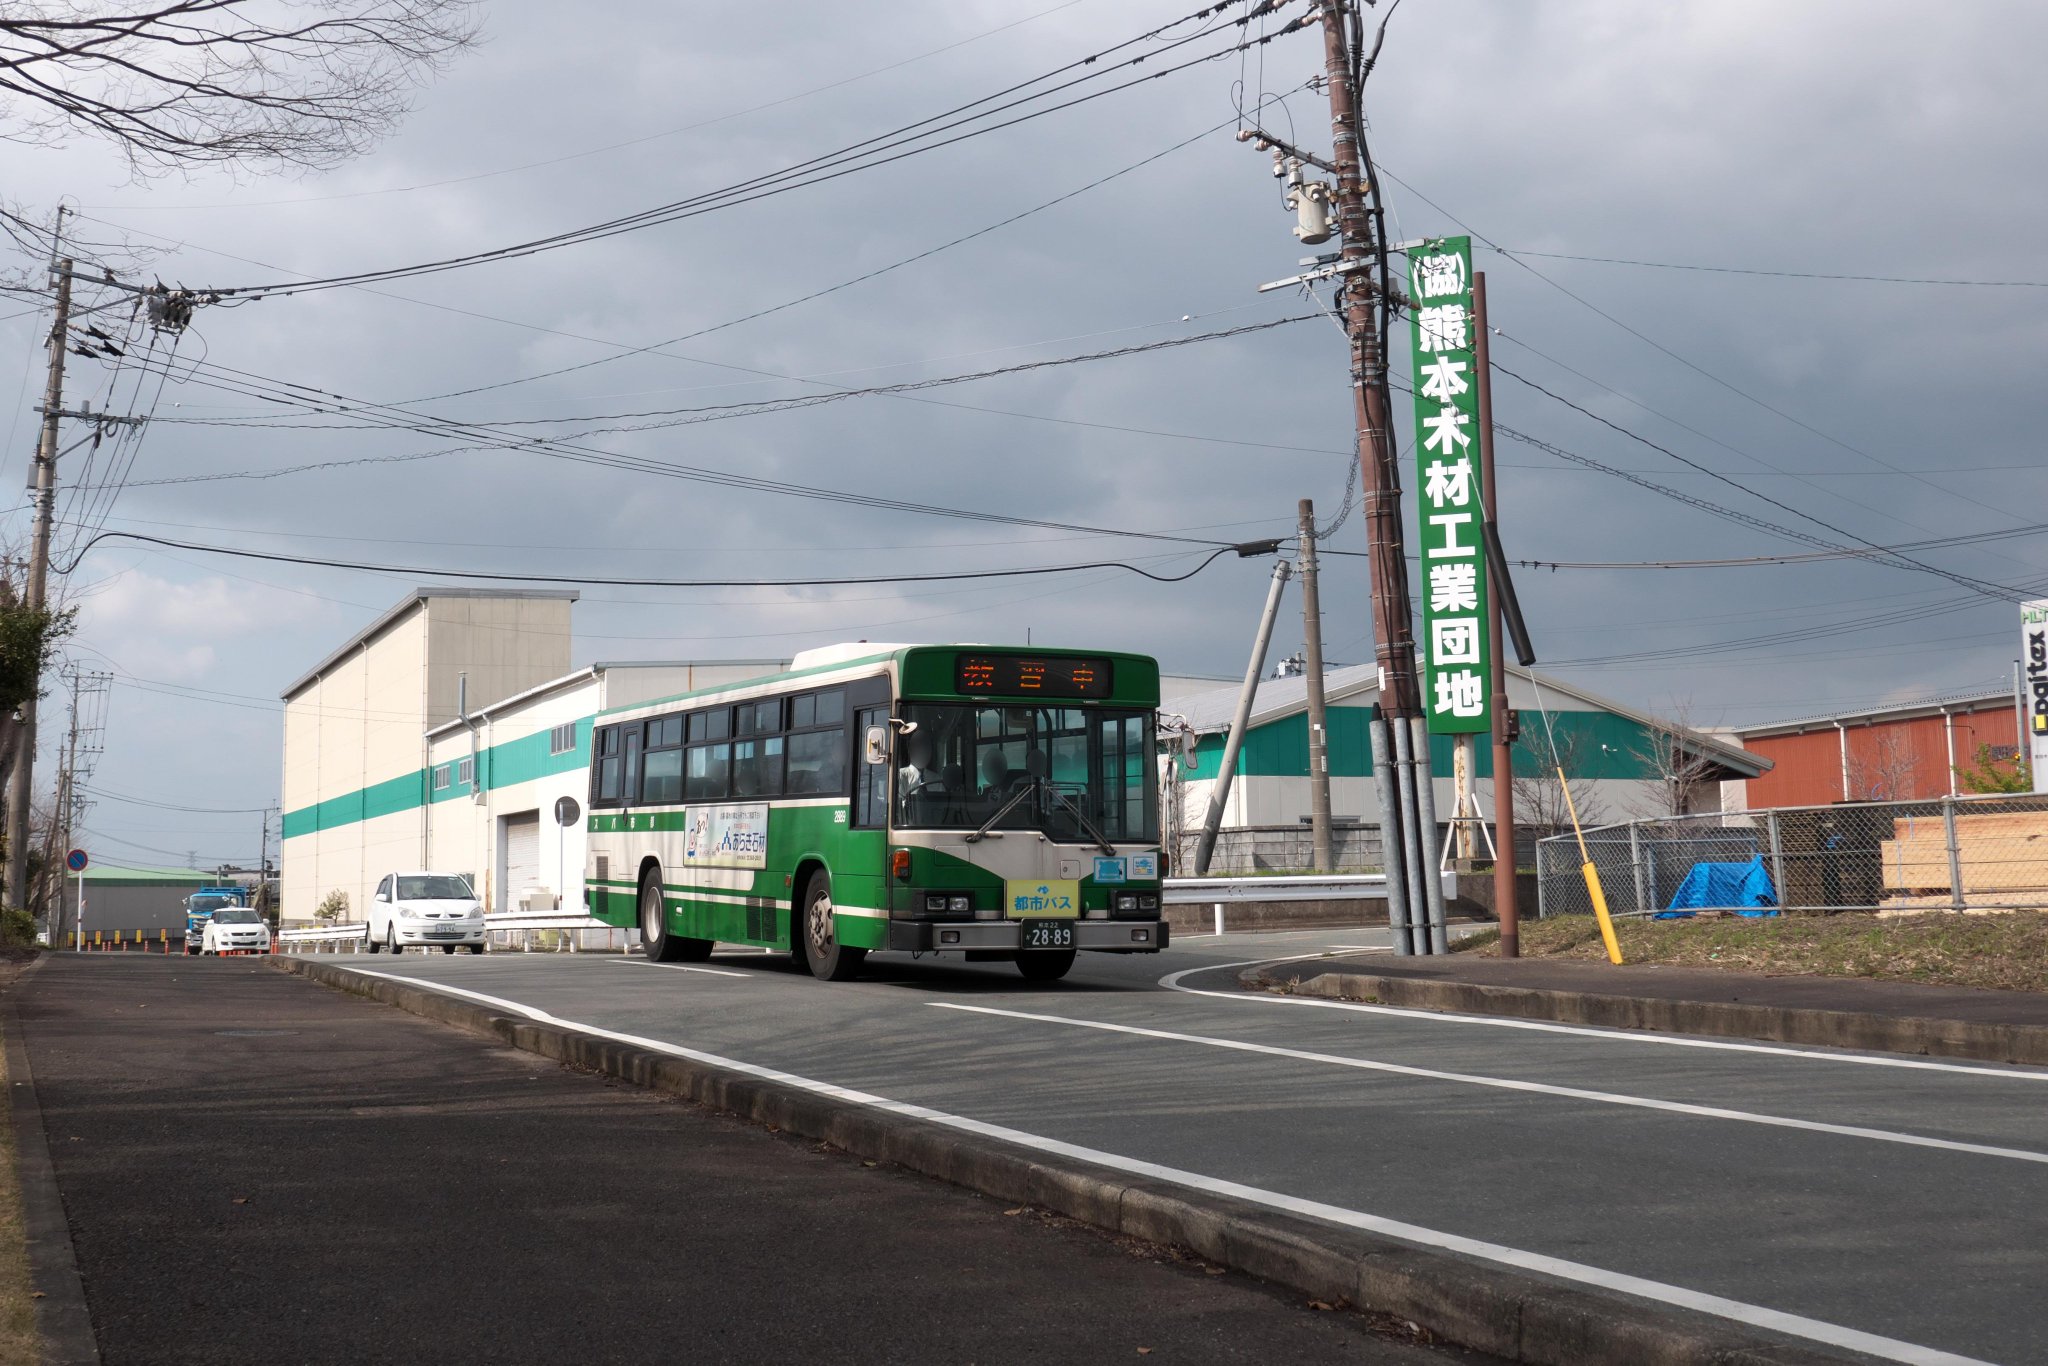 R Tsubame V Twitter 4月からg1 5系統は都市バスの運行となるため 今日は路線教習として都市バスの車両が稼働していました 撮影地 免許センター パークドーム熊本前間 撮影日 21年3月13日 Rtsubame Photo